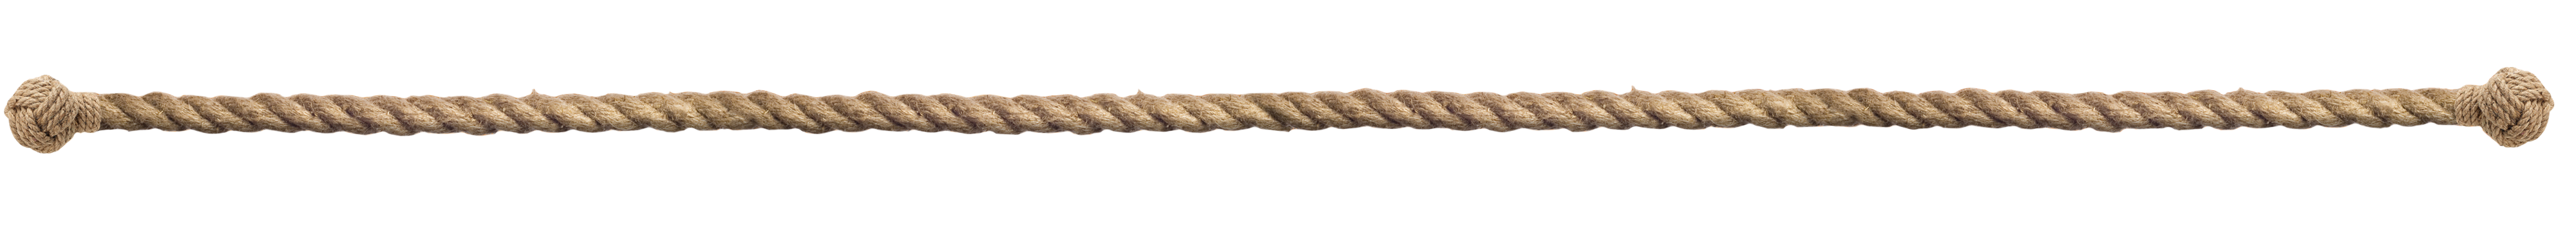 bulk hemp rope #17098